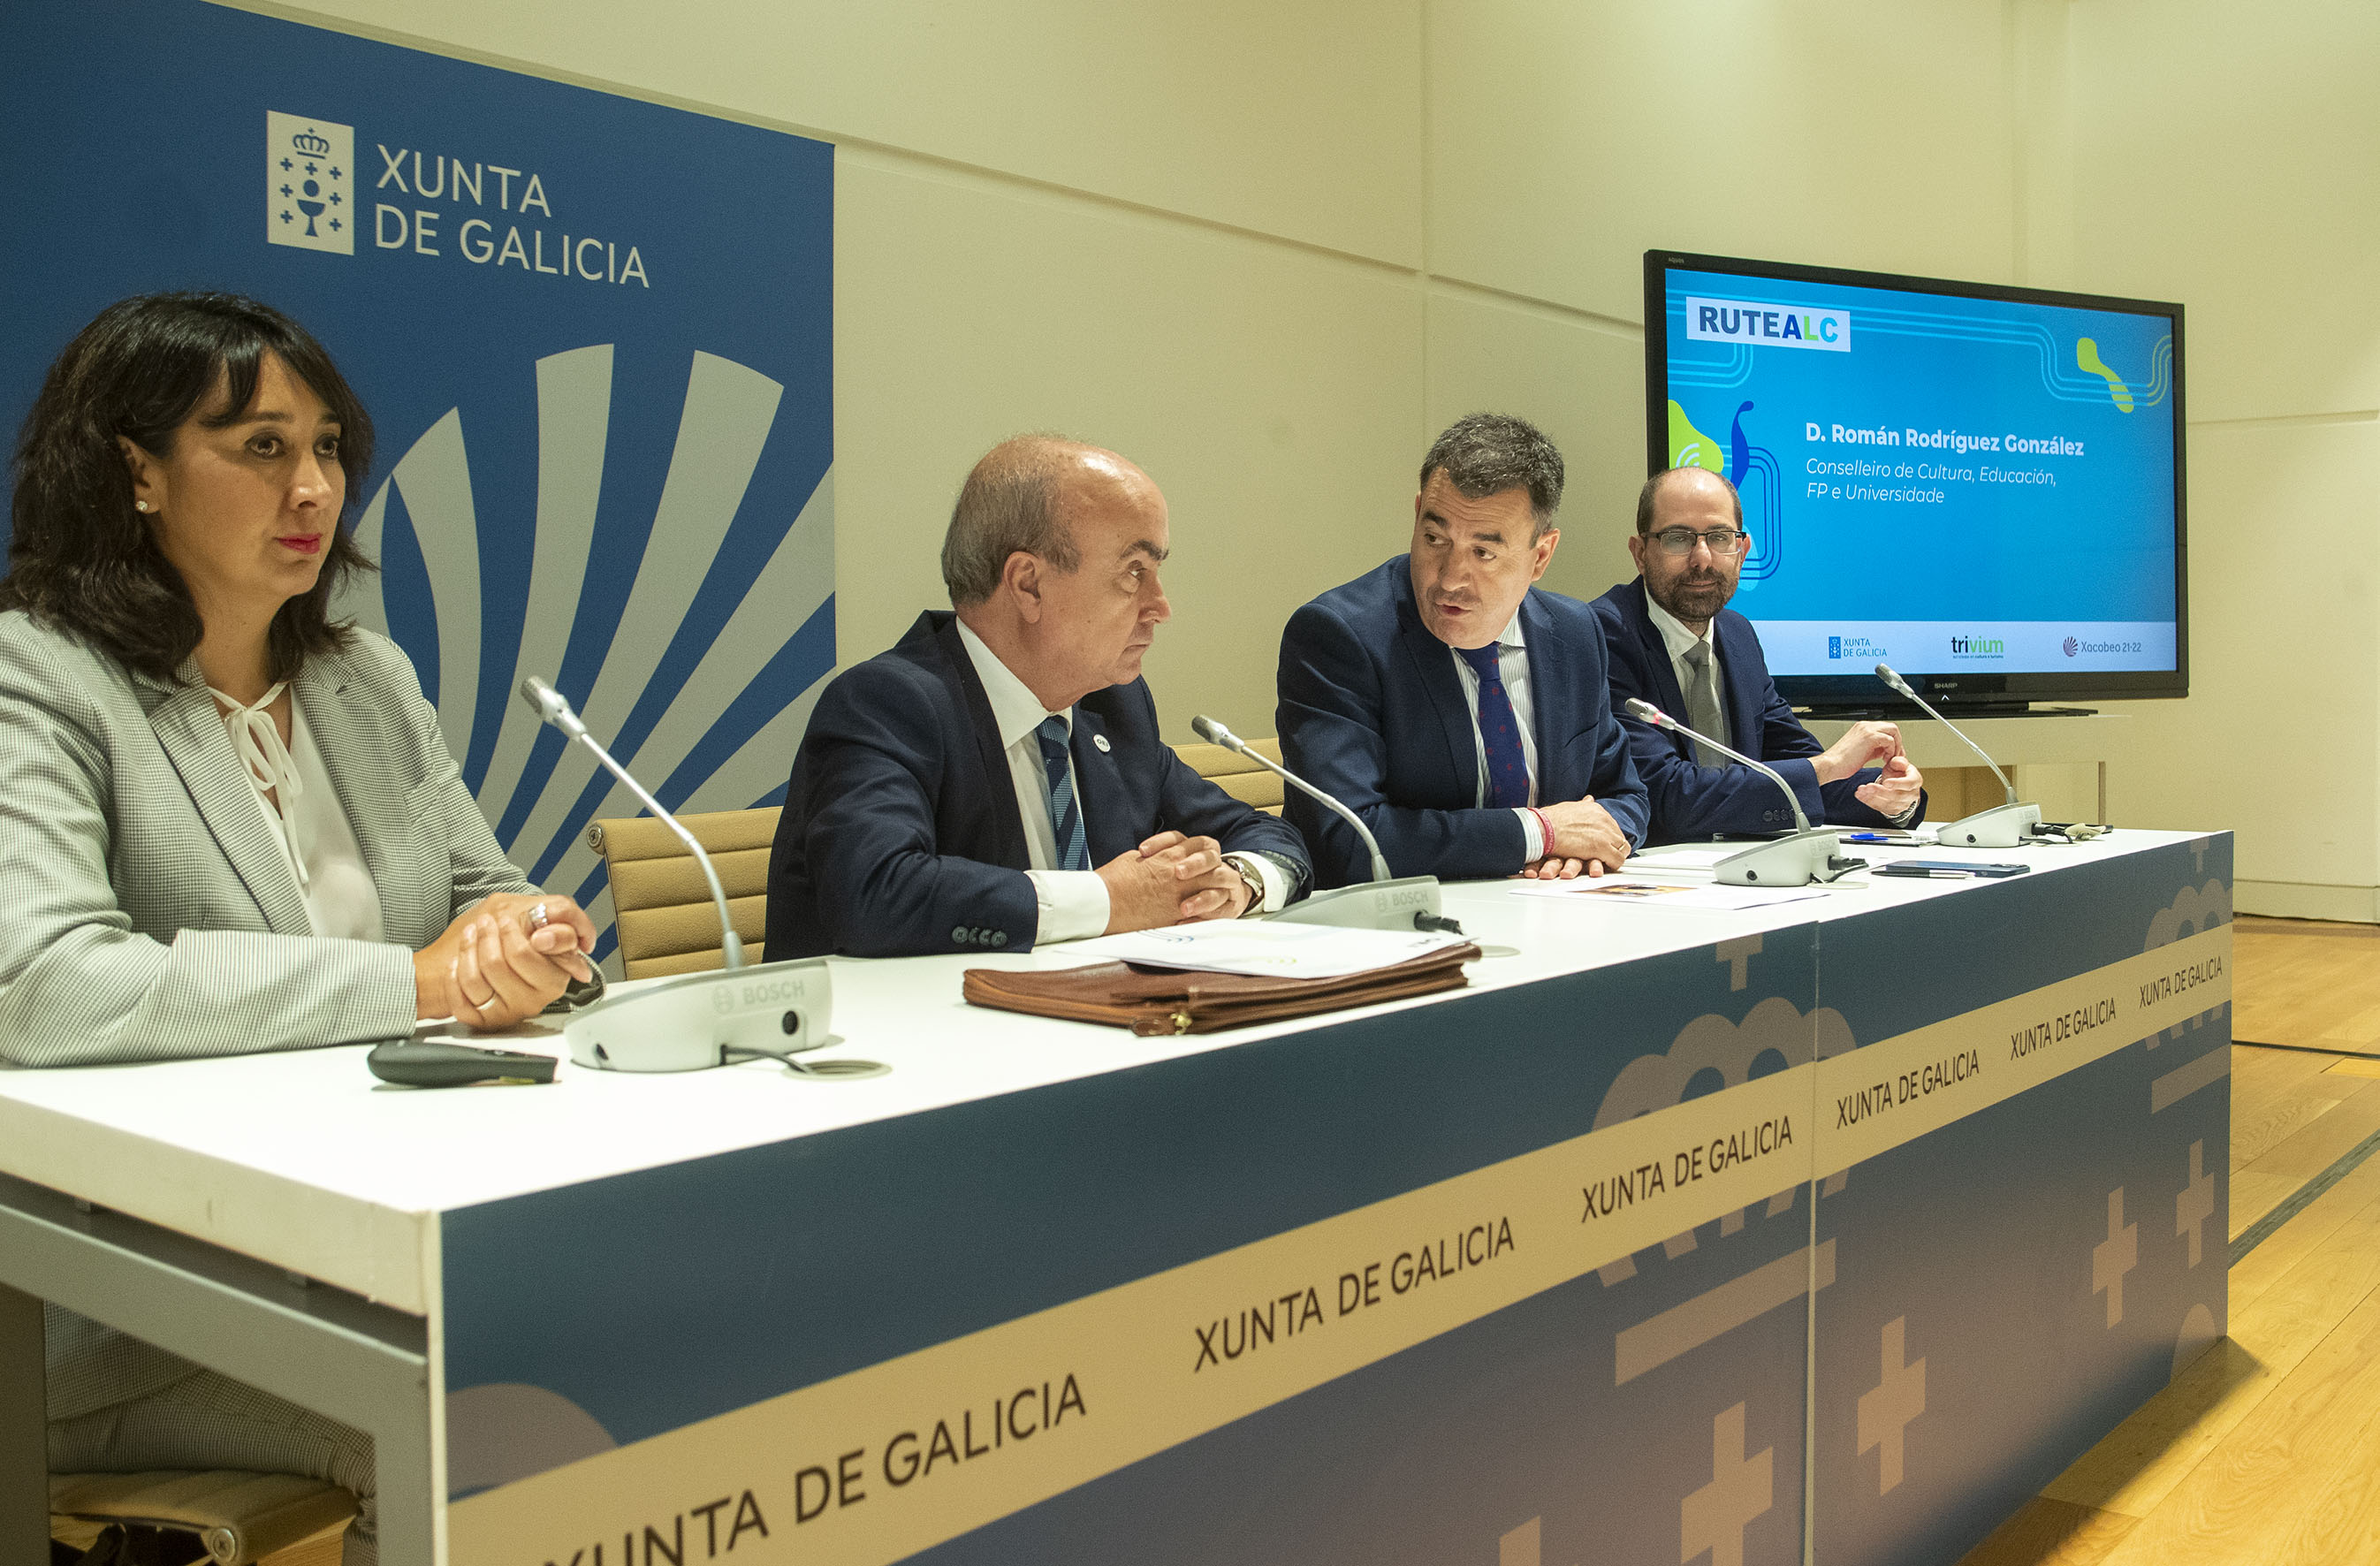 La OEI, la Xunta de Galicia y Trivium presentan una incubadora que impulsará nuevas rutas culturales en Iberoamérica